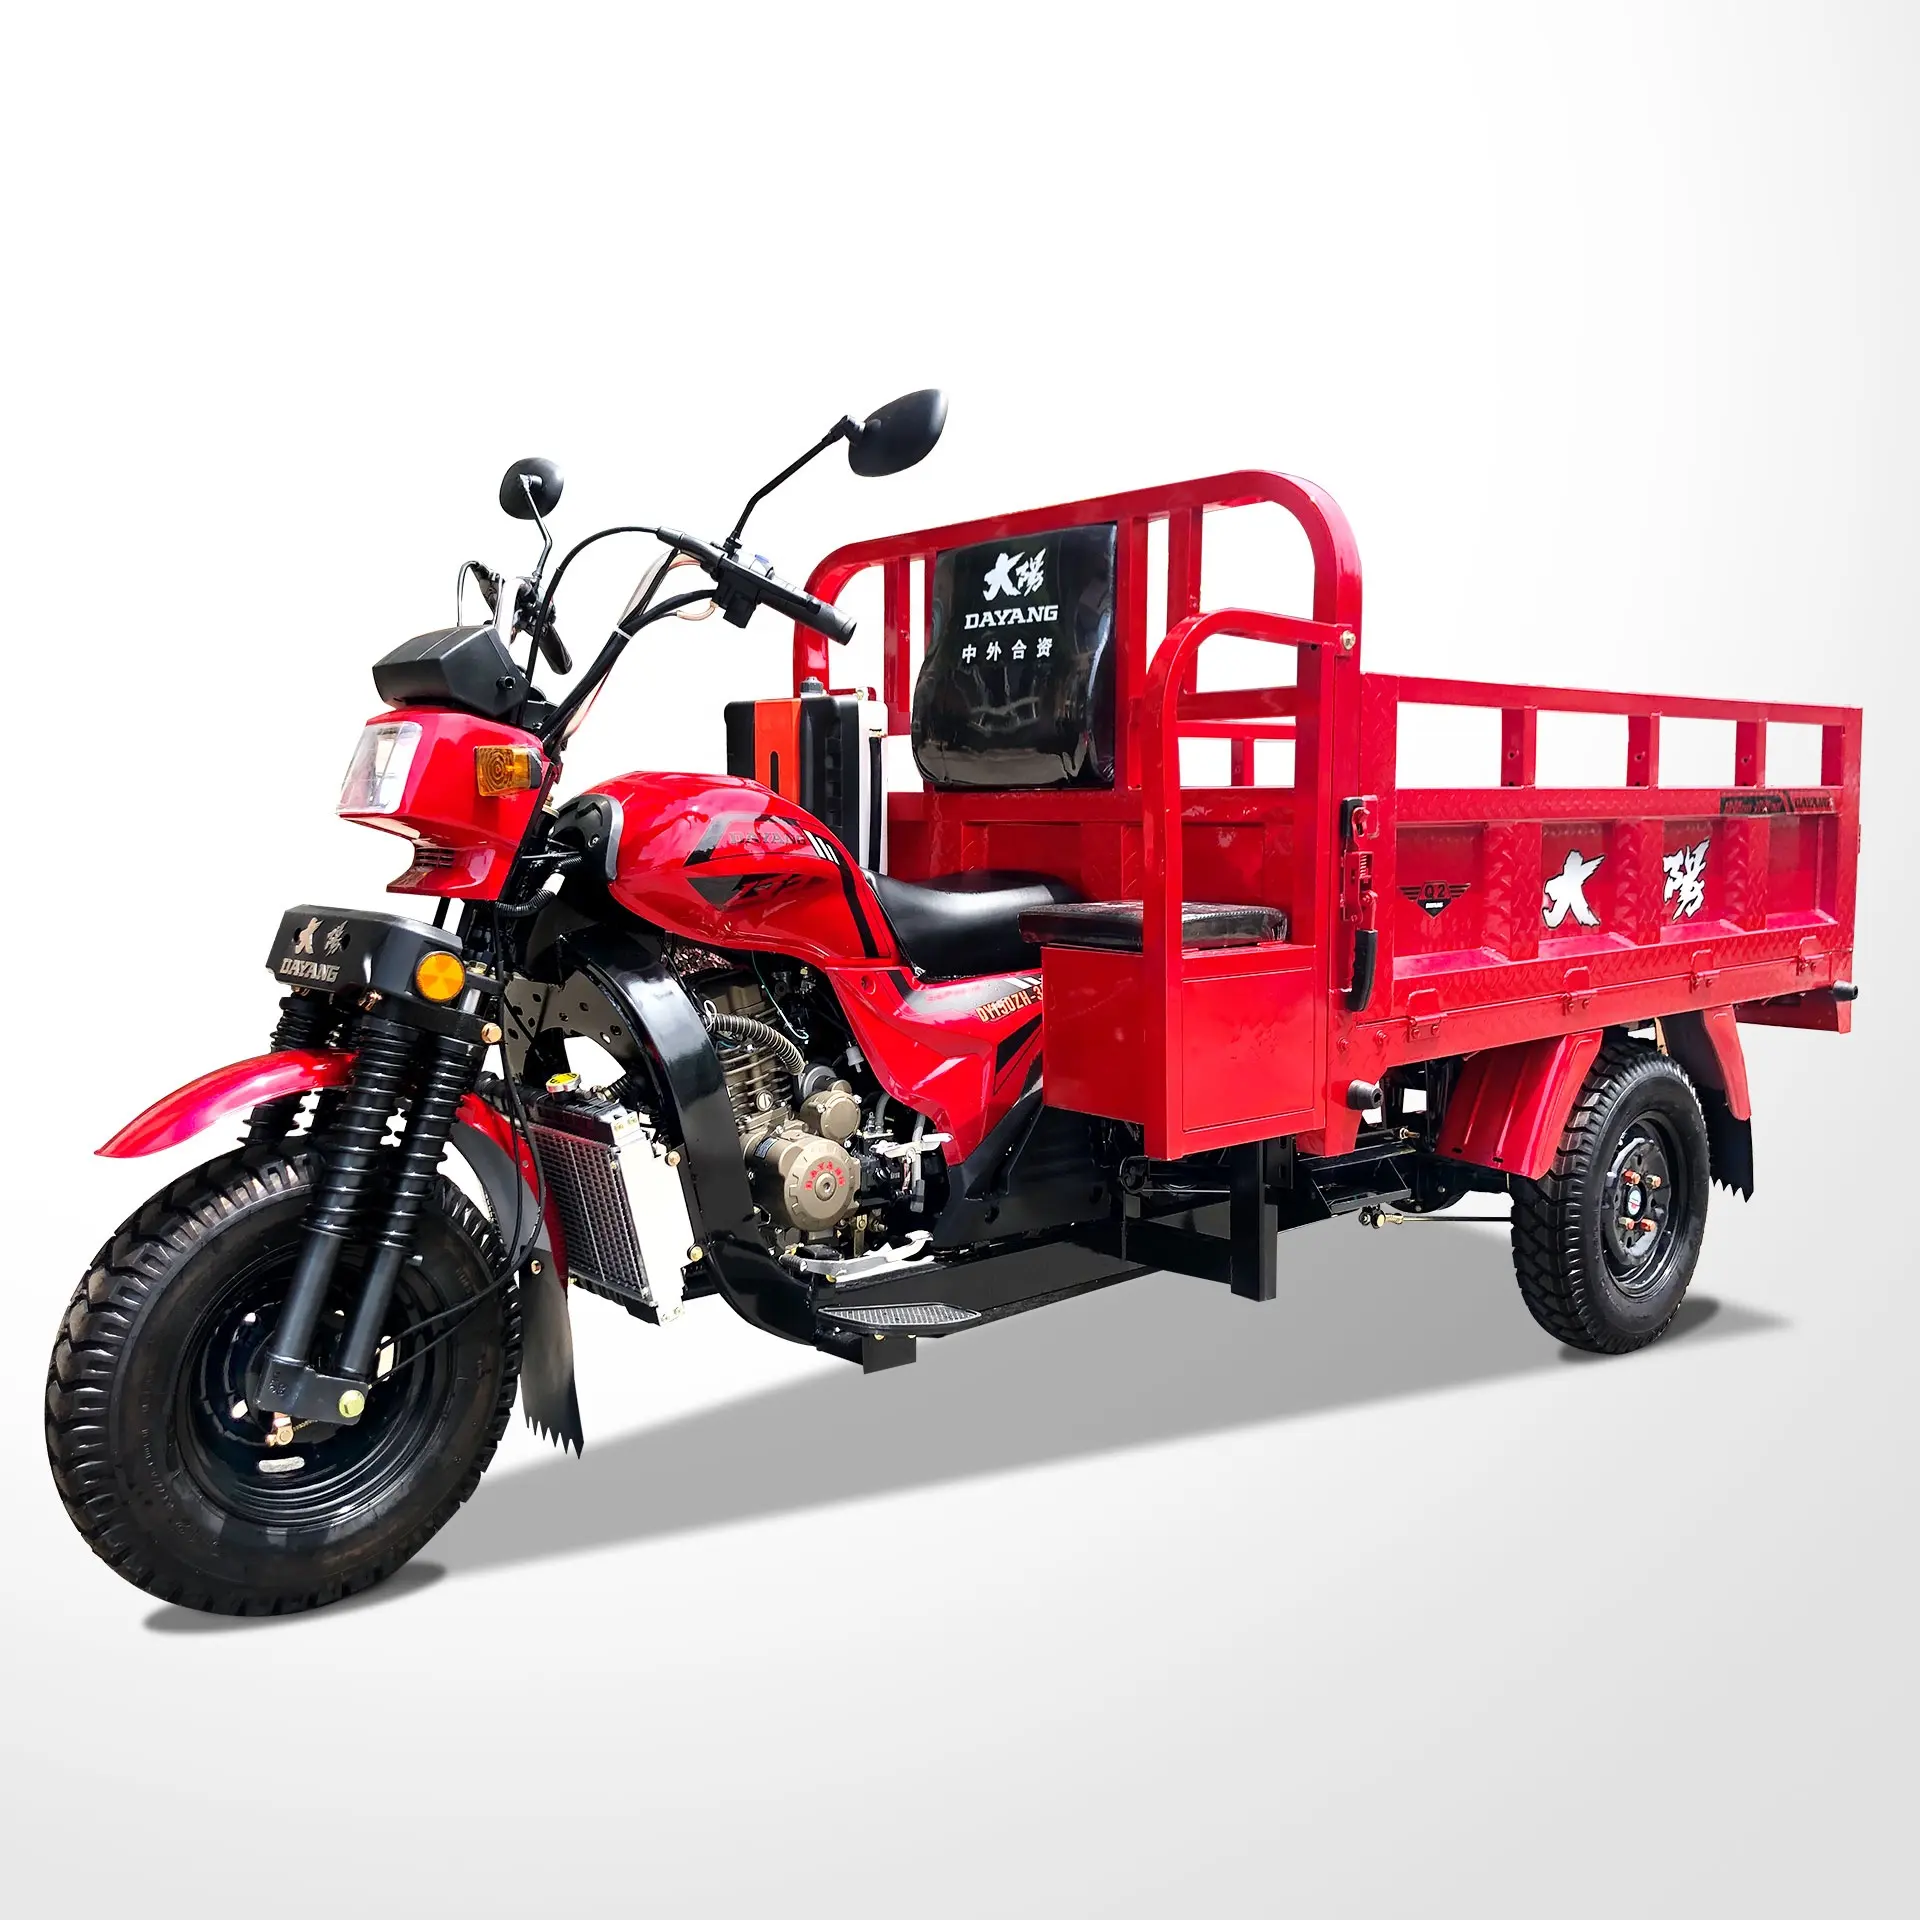 Benzinli dört zamanlı motorlu 3 tekerlekli kargo motosiklet kargo motosiklet ağır yük kargo kutusu motorlu 3 tekerlekli